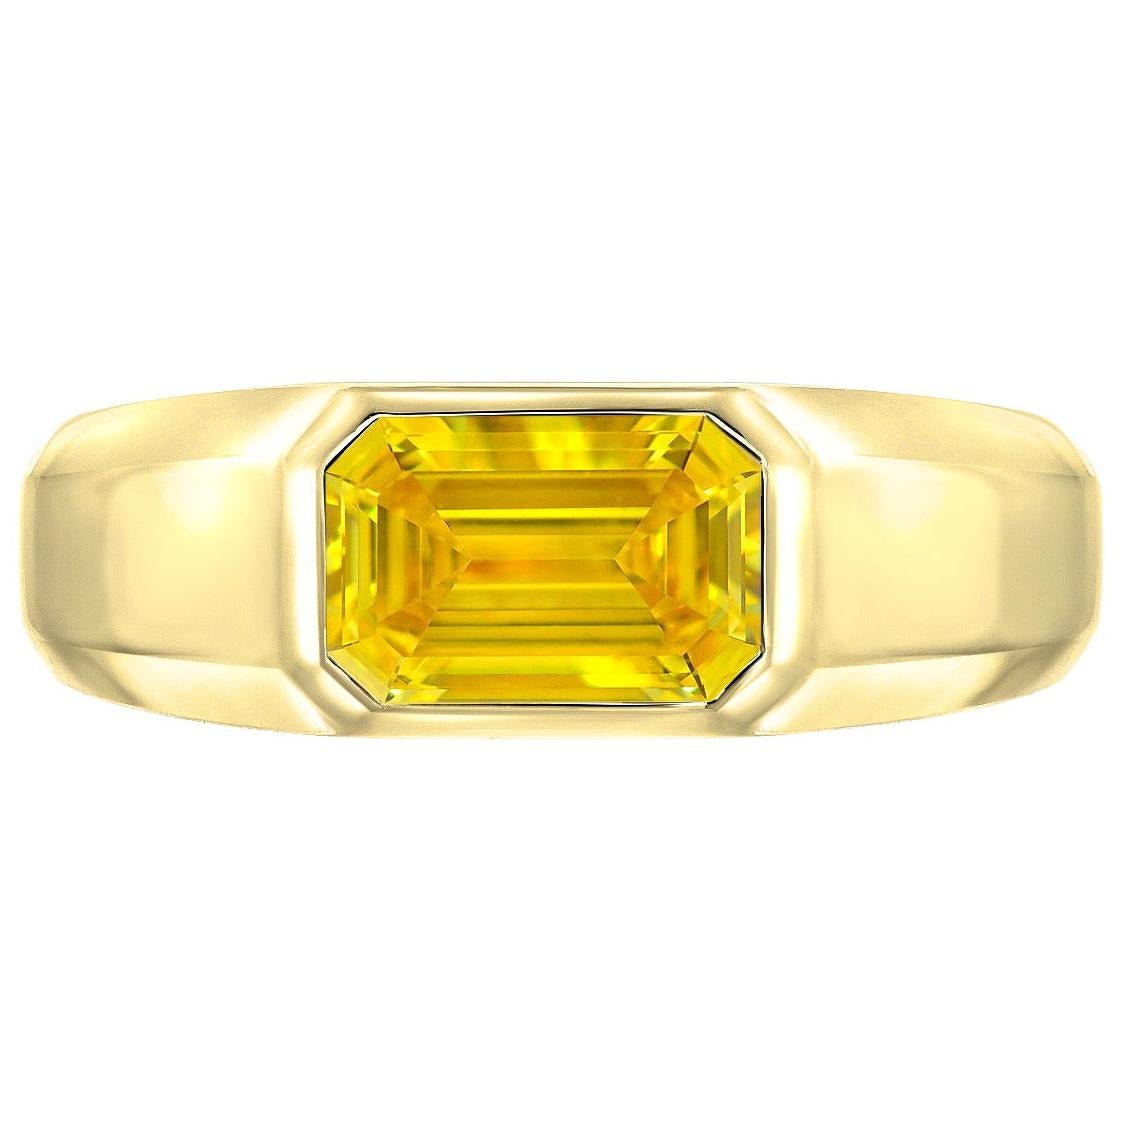 Fancy Vivid Yellow Diamond Ring GIA Certified 1.04 Carat